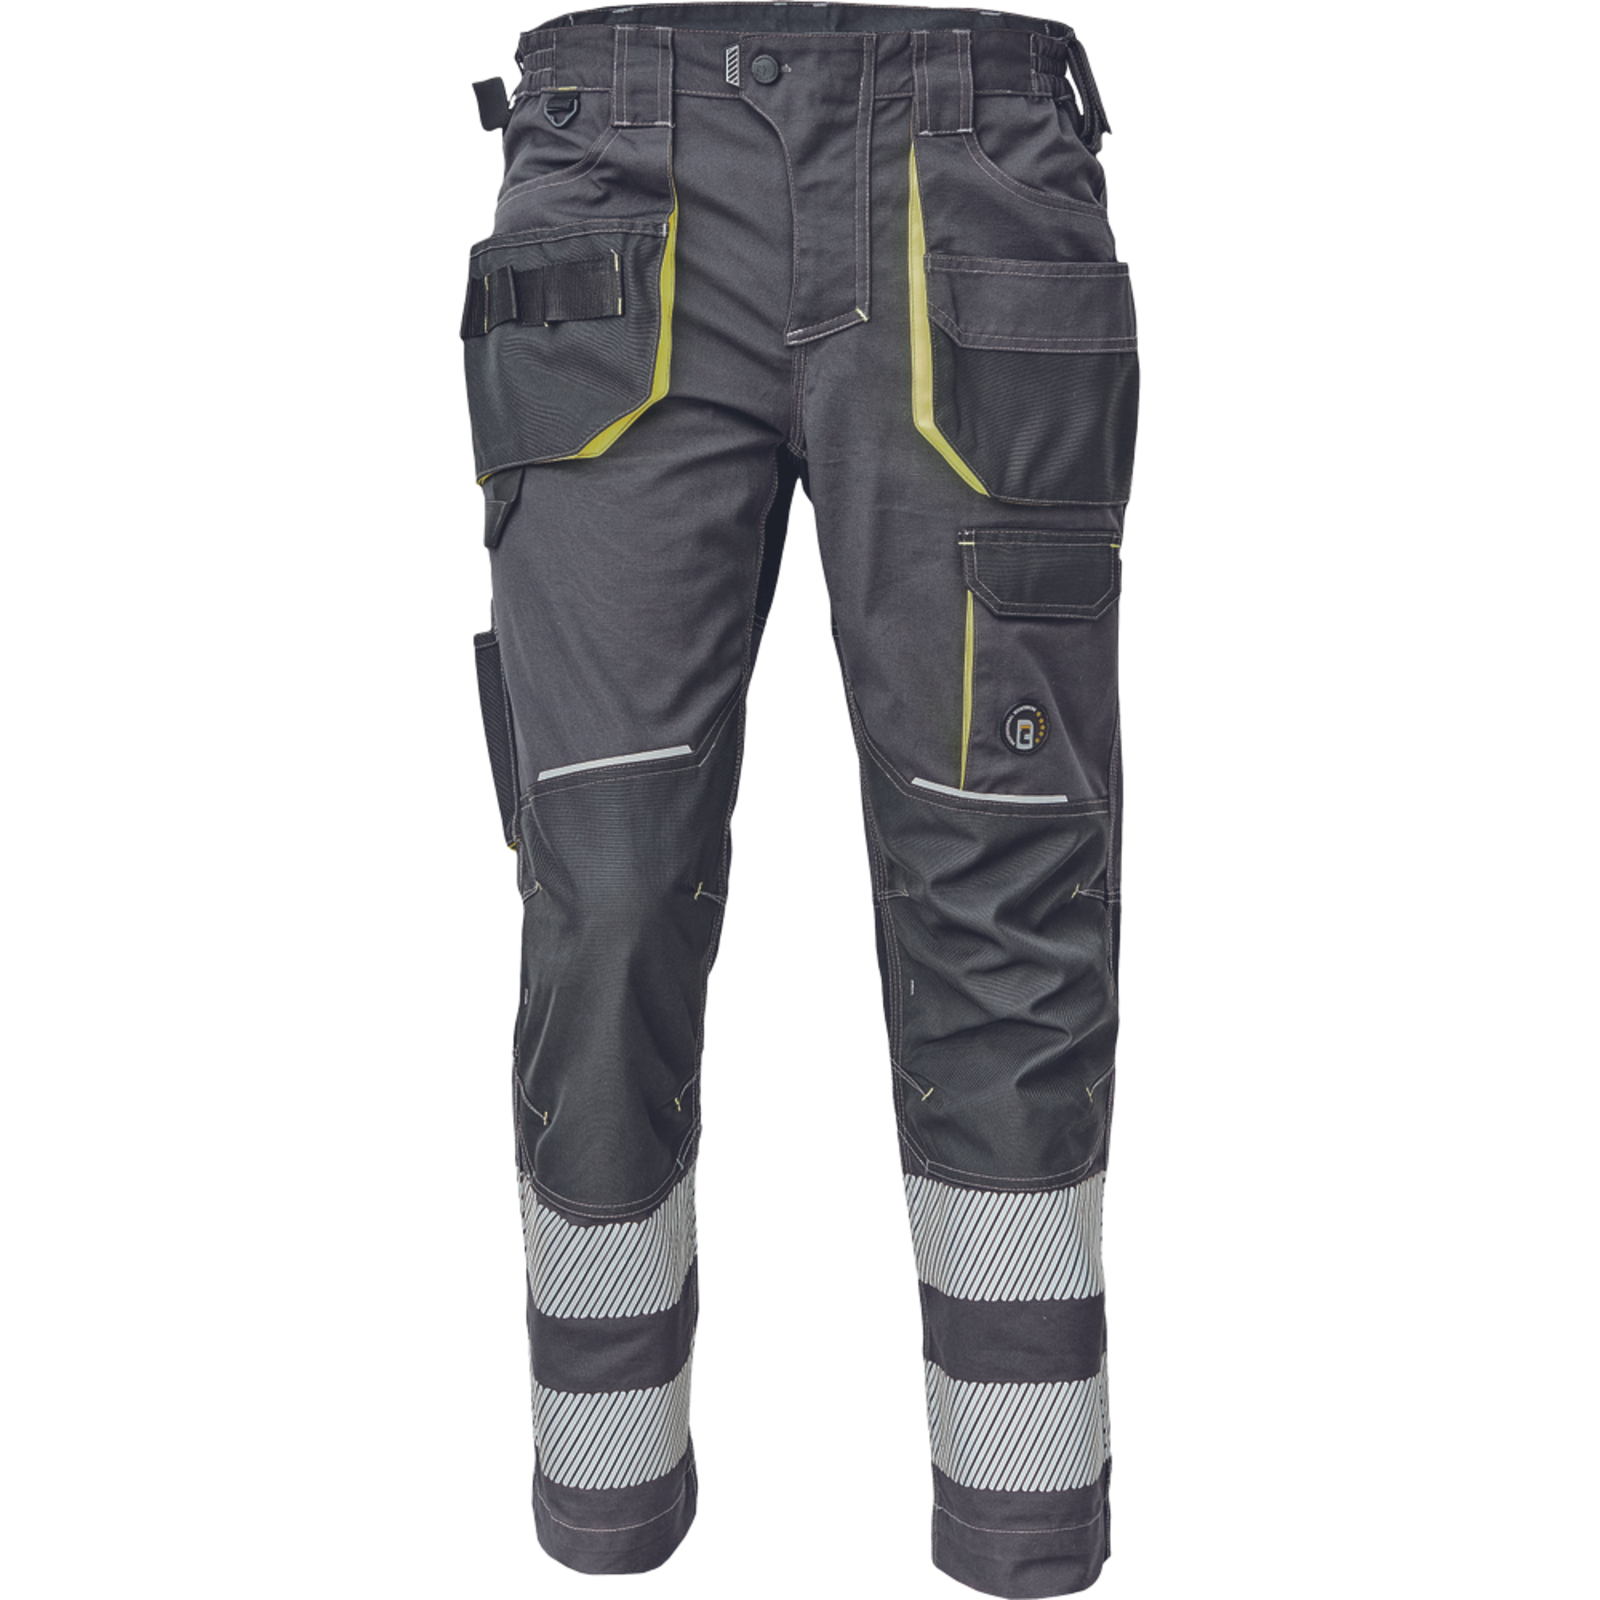 Pracovné nohavice s reflexnými pruhmi Cerva Sheldon RFLX pánske - veľkosť: 58, farba: antracit/žltá